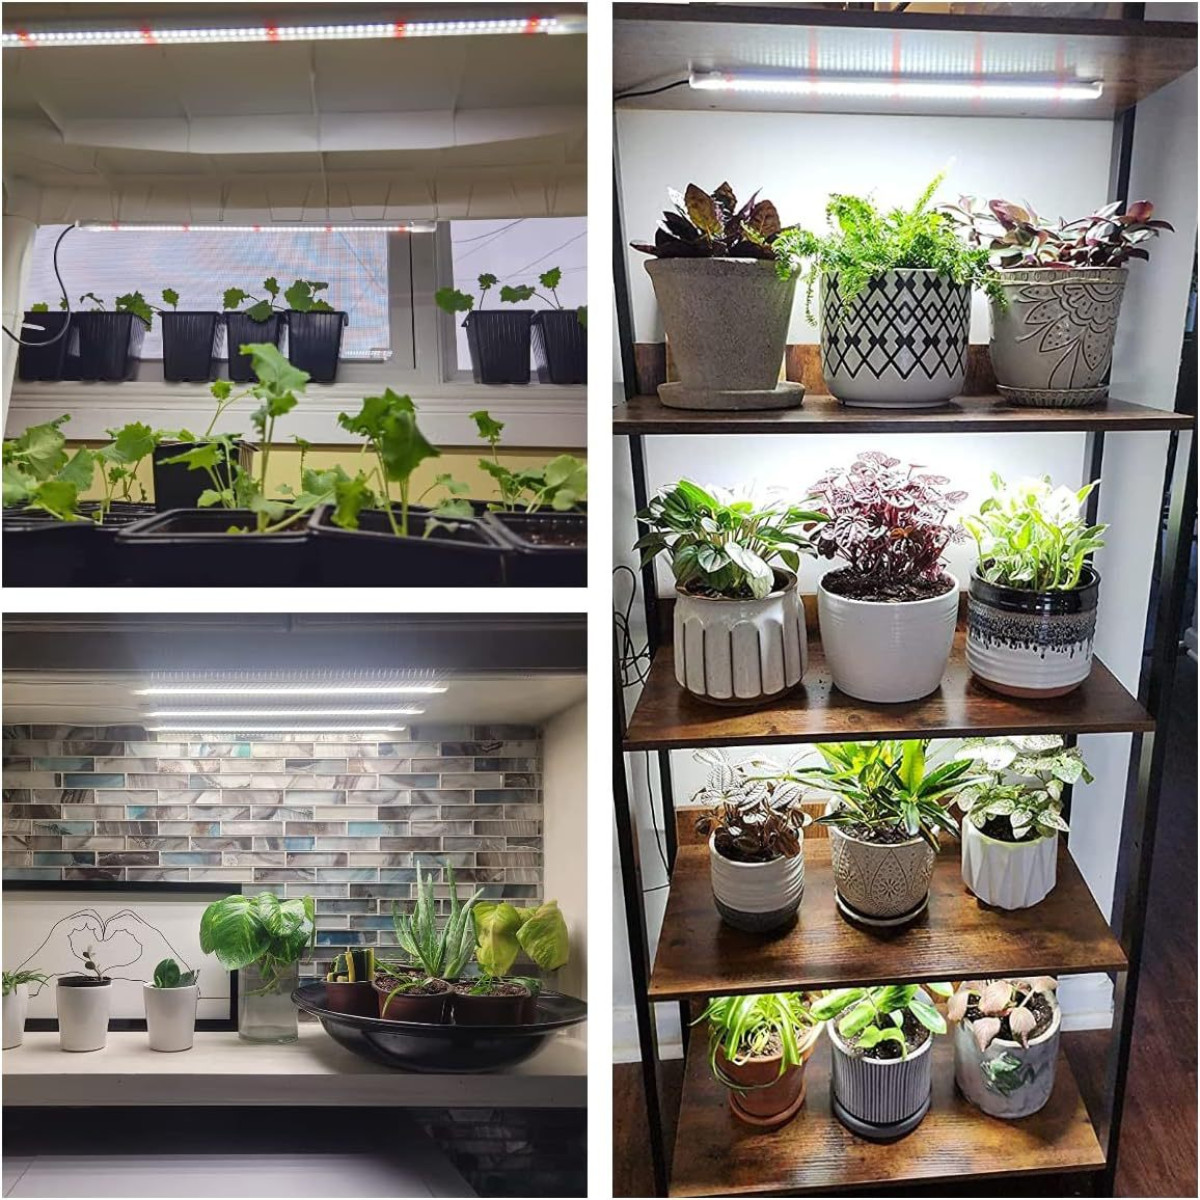 INF Pflanzenbeleuchtung, Wachstumslicht für Pflanzenlicht Zimmerpflanzen, mit Vollspektr